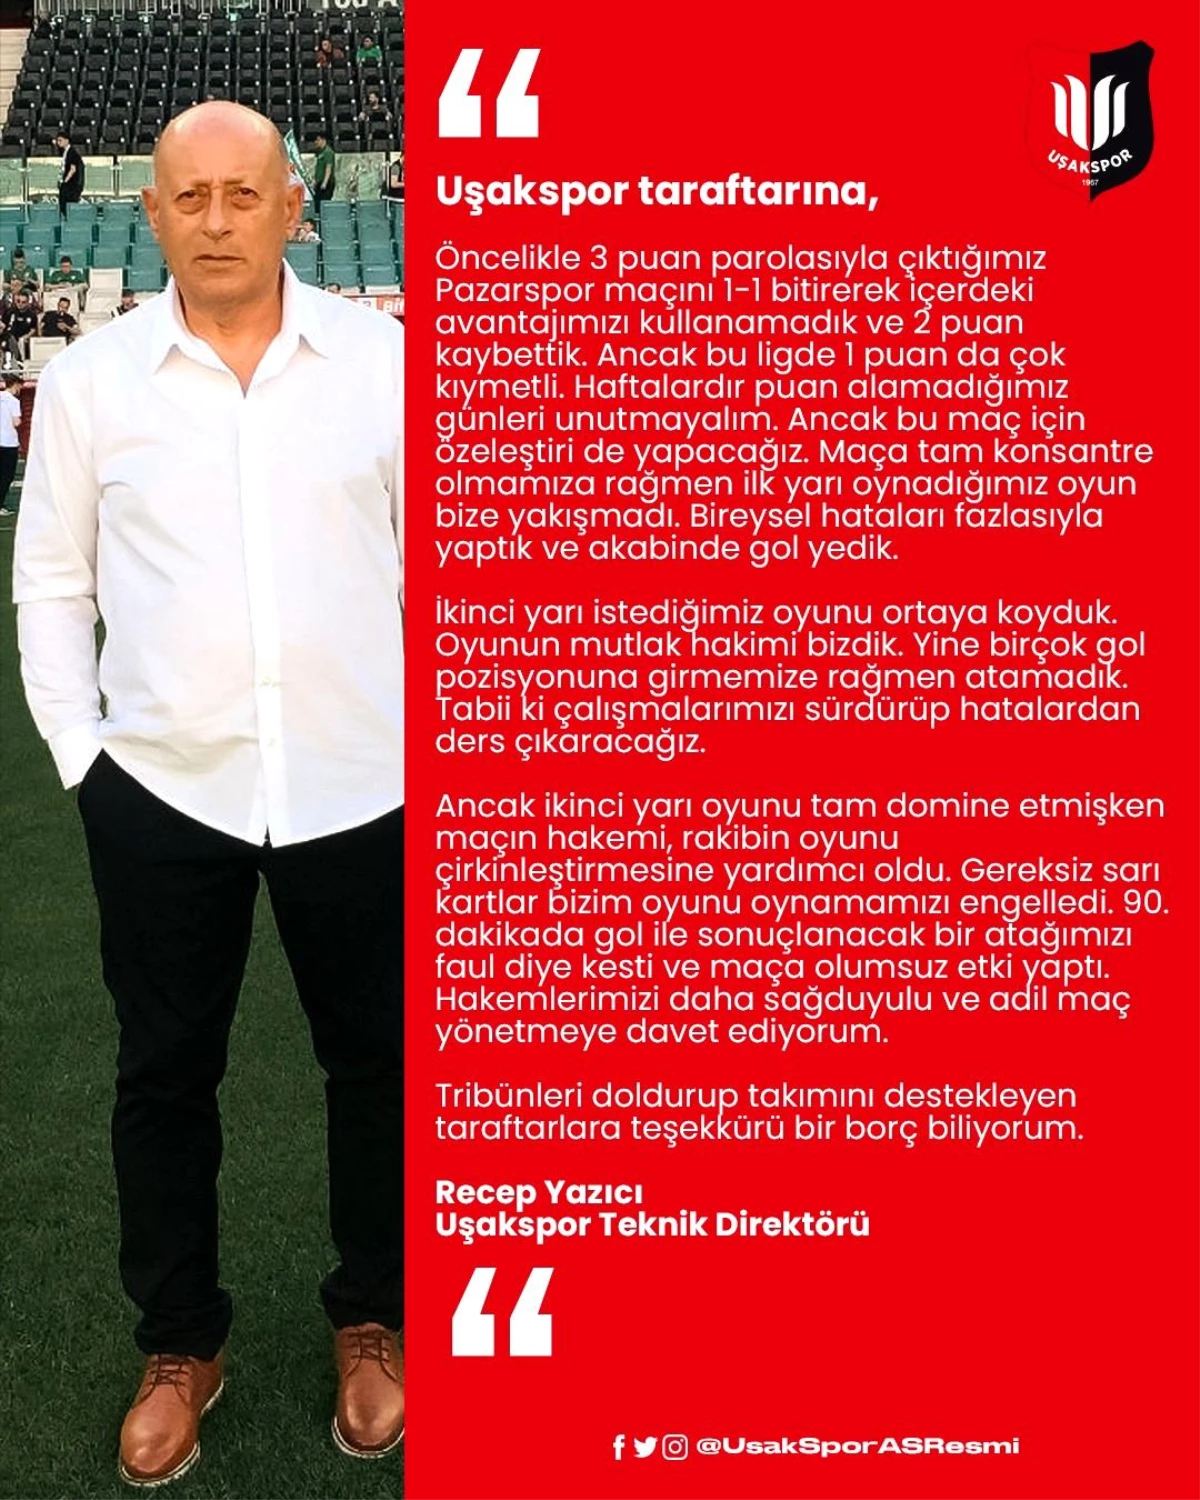 Uşakspor Teknik Direktörü Yazıcı, Hakemleri adli olmaya davet ediyorum"